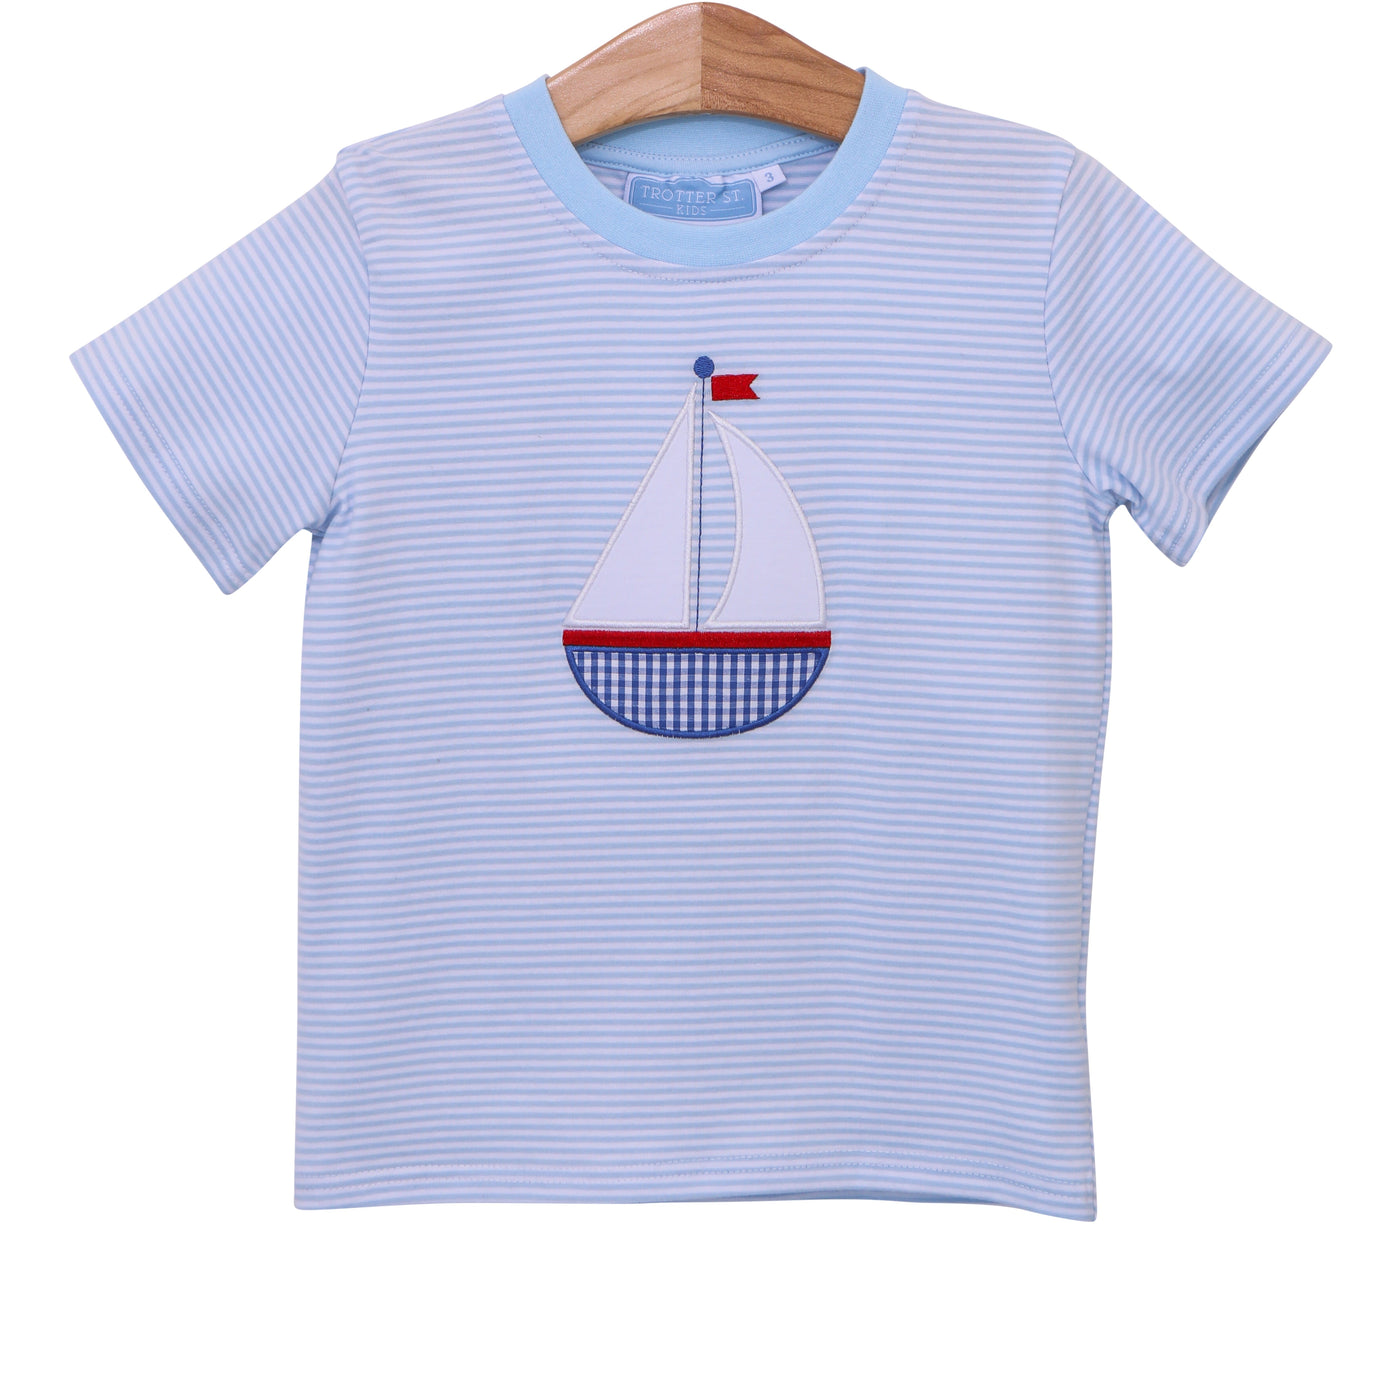 Shirt - Sailboat